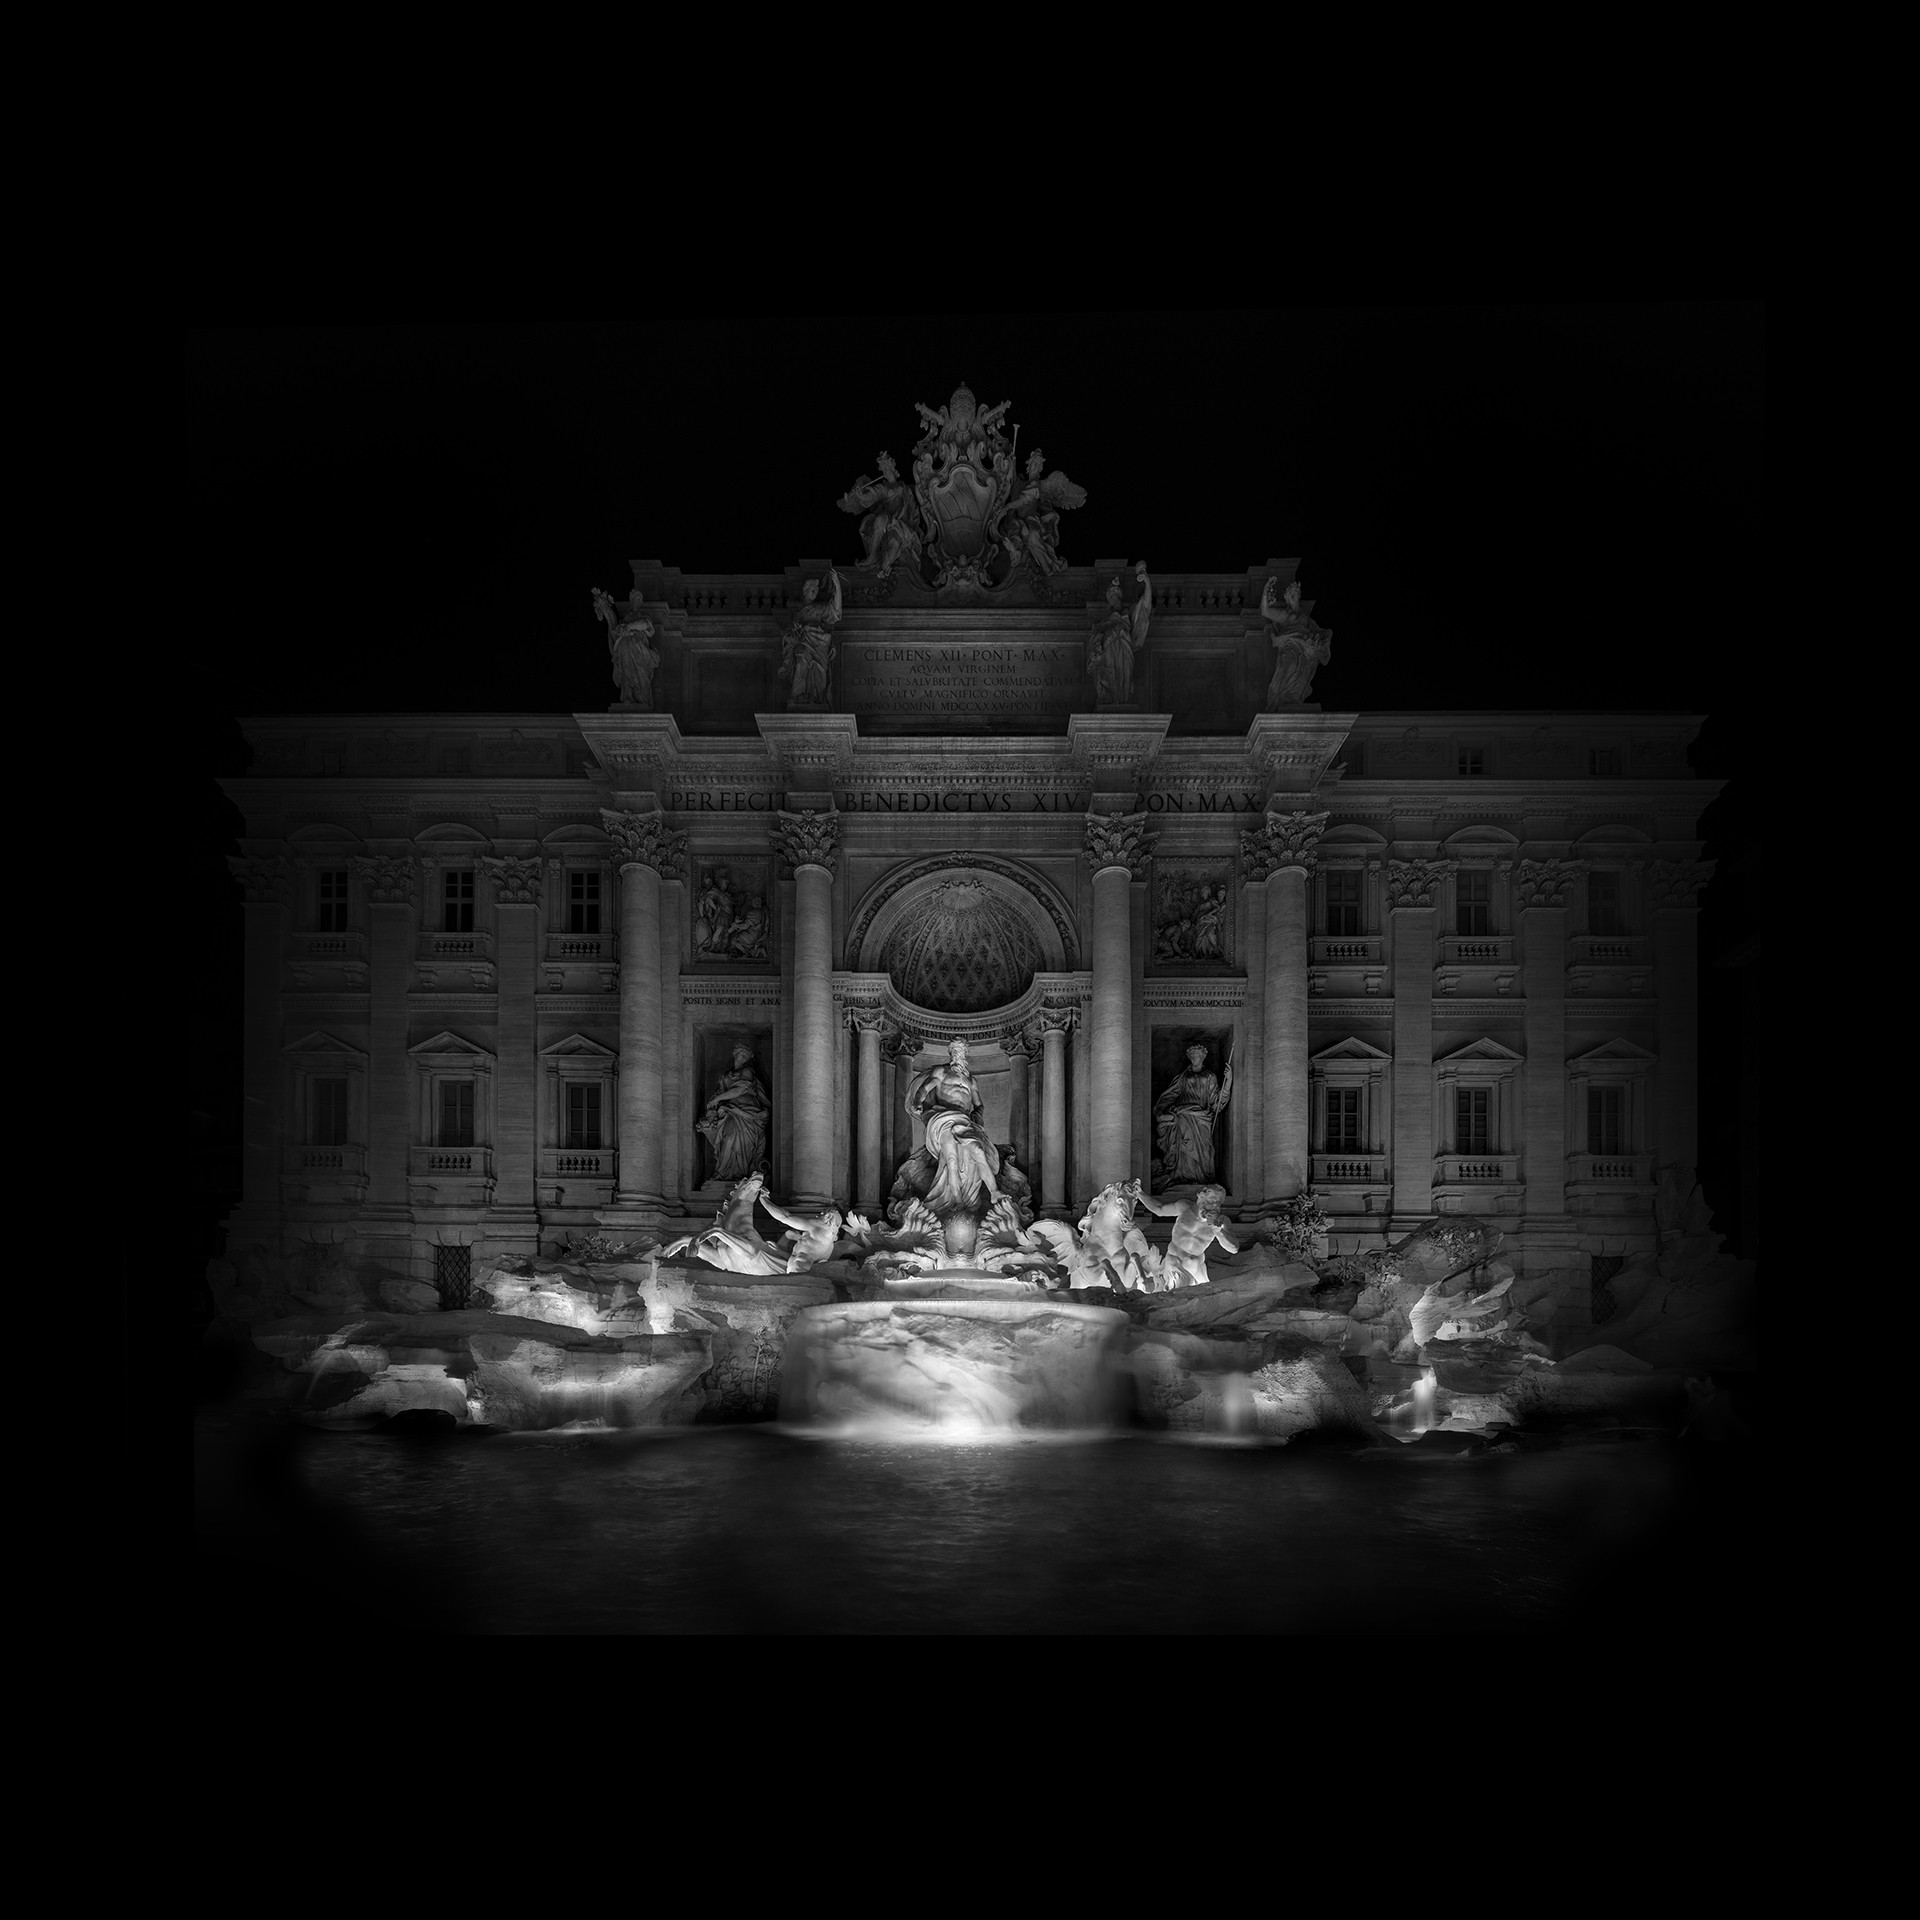 Photographie de nuit en noir et blanc de la Fontaine de Trevi par Piredda, photographe d'architecture italien.